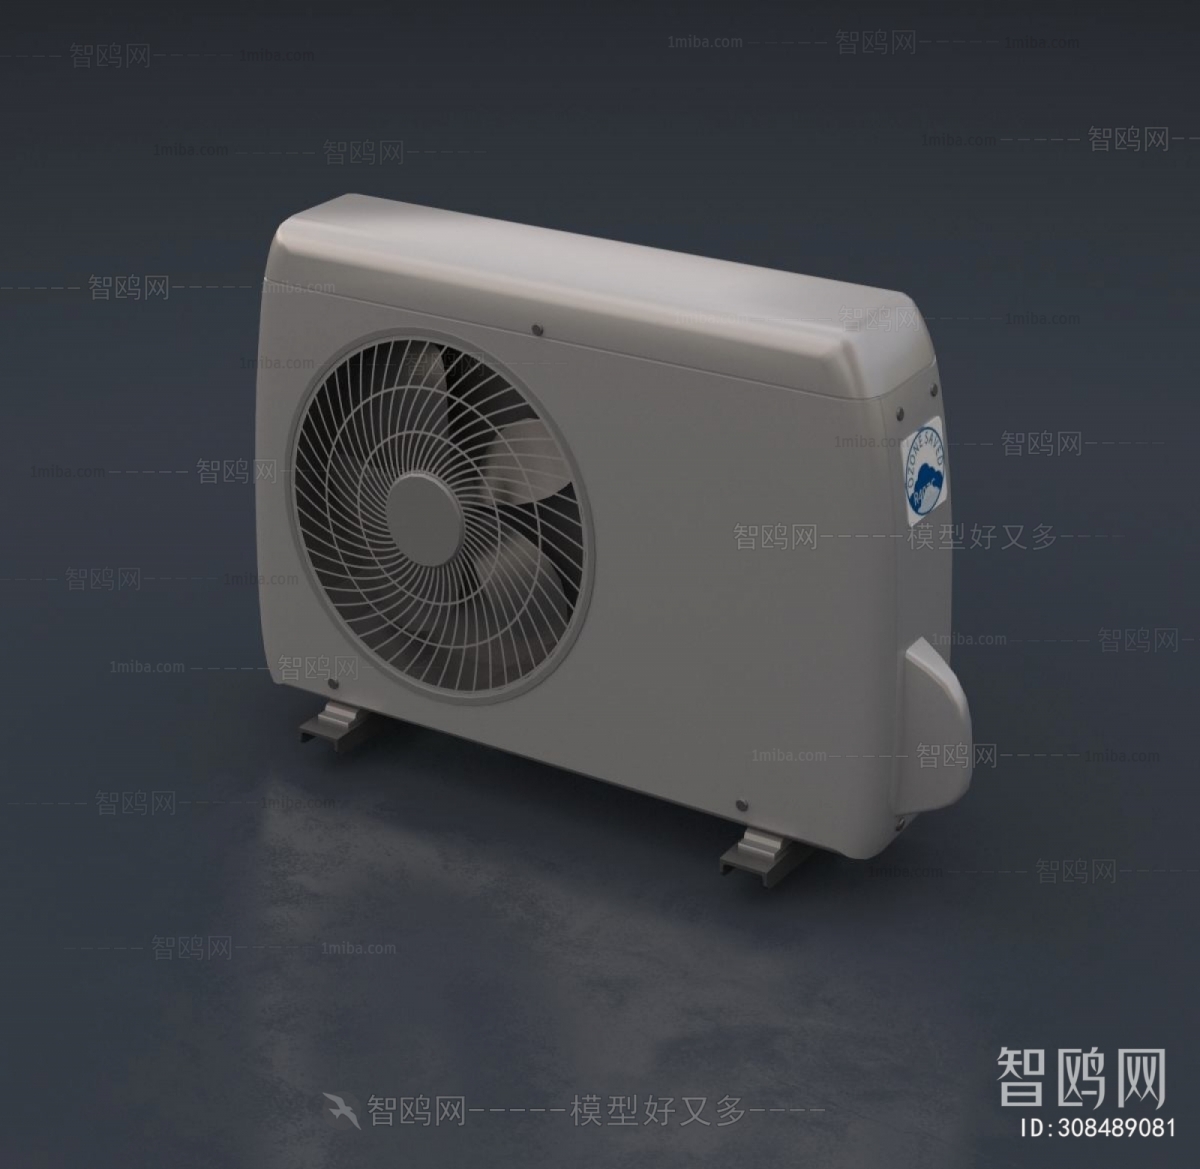 Modern Air Conditioner